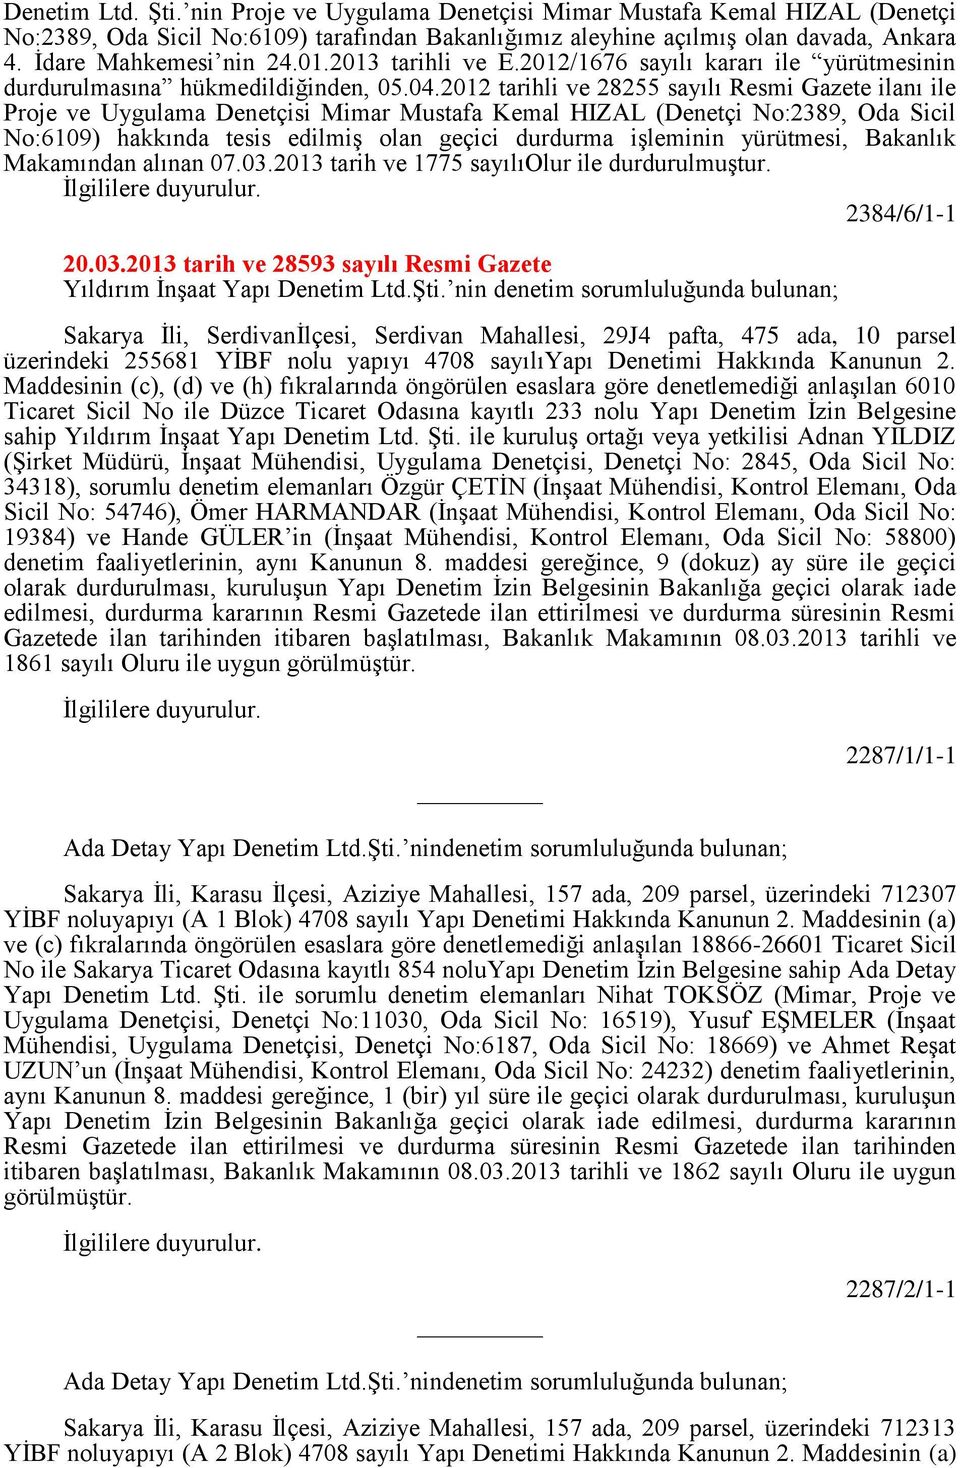 2012 tarihli ve 28255 sayılı Resmi Gazete ilanı ile Proje ve Uygulama Denetçisi Mimar Mustafa Kemal HIZAL (Denetçi No:2389, Oda Sicil No:6109) hakkında tesis edilmiş olan geçici durdurma işleminin